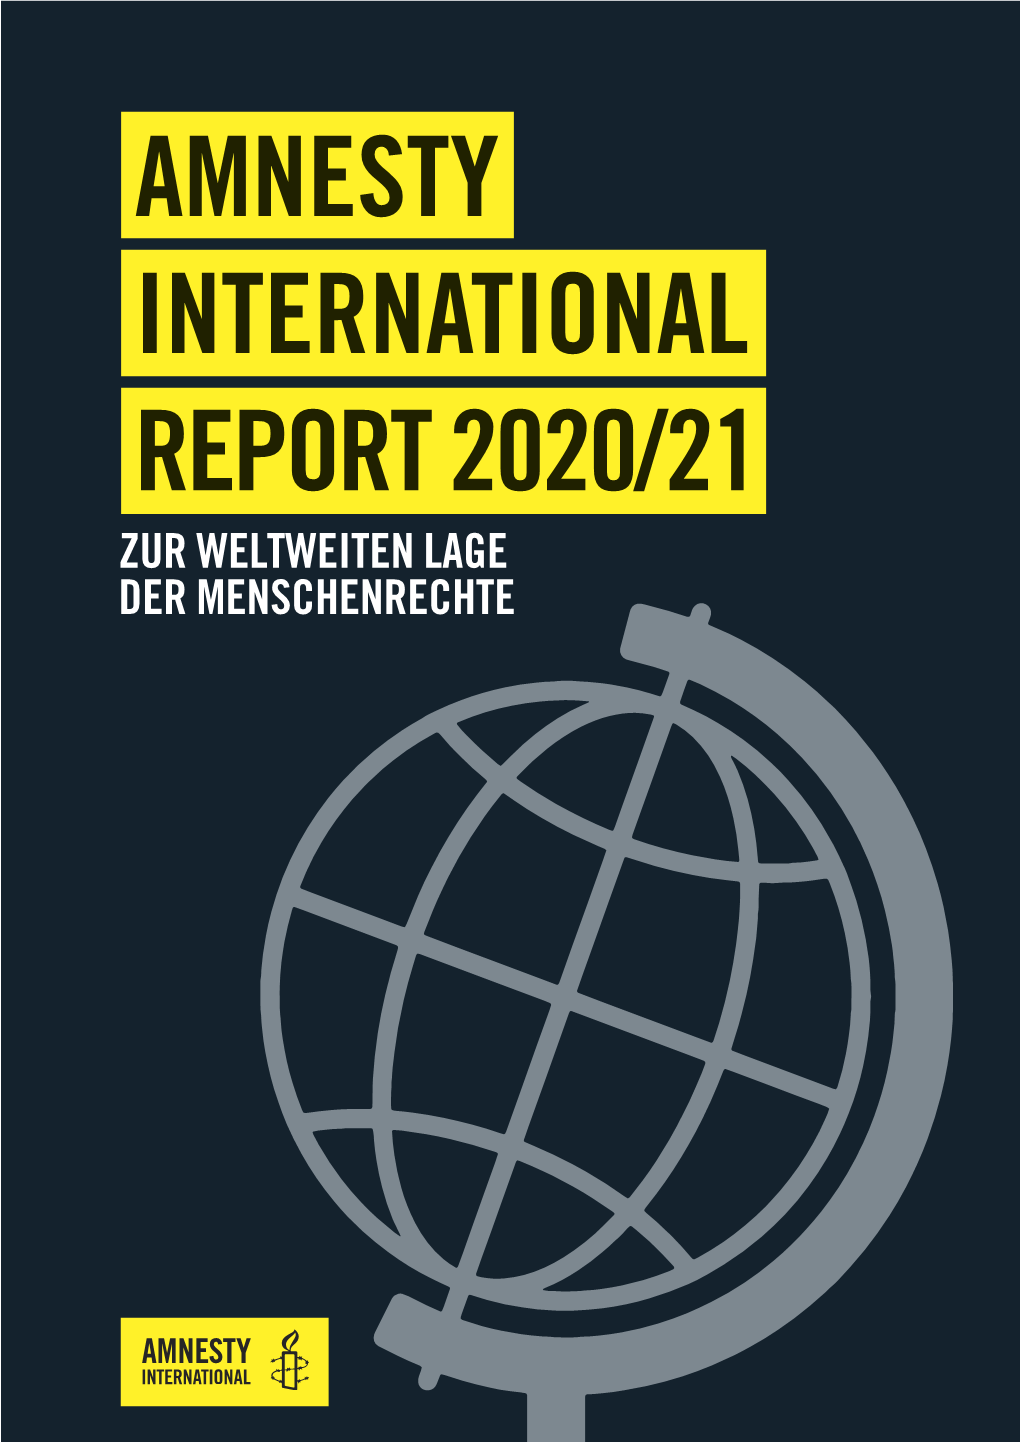 Amnesty International Report 2020/21 Zur Weltweiten Lage Der Menschenrechte 2 / Amnesty International